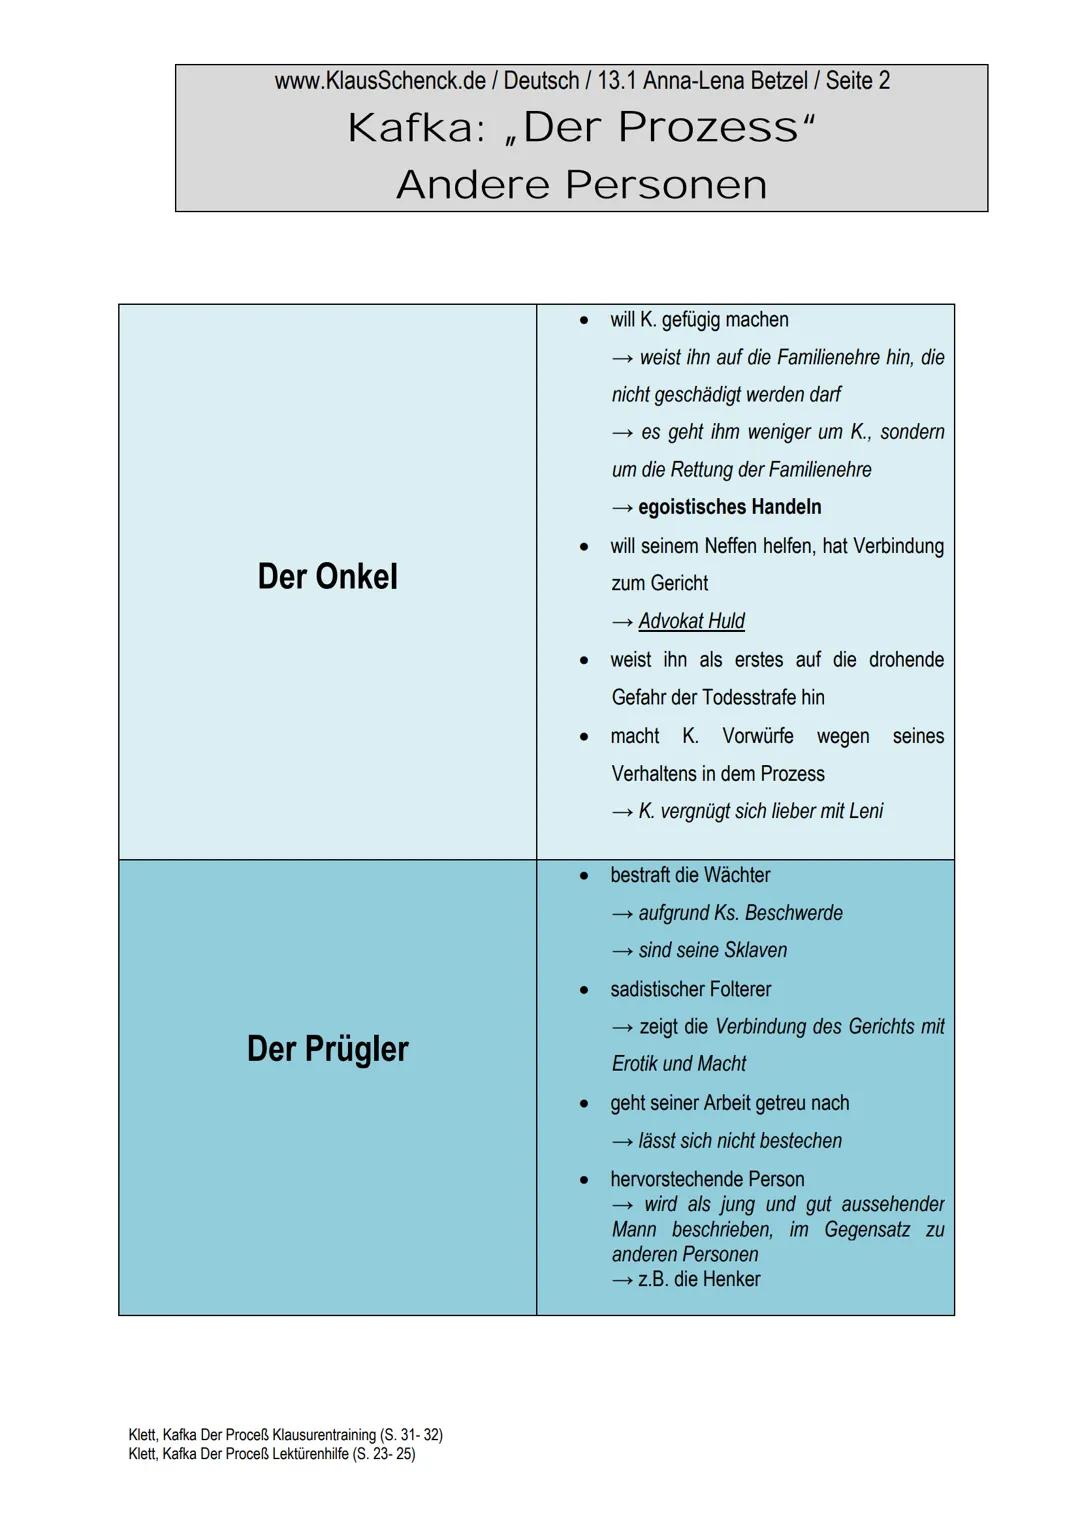 www.KlausSchenck.de / Deutsch / 13.1 Anna-Lena Betzel / Seite 1
Kafka: „Der Prozess“
Andere Personen
1. Allgemeine Begriffserklärung:
Advoka